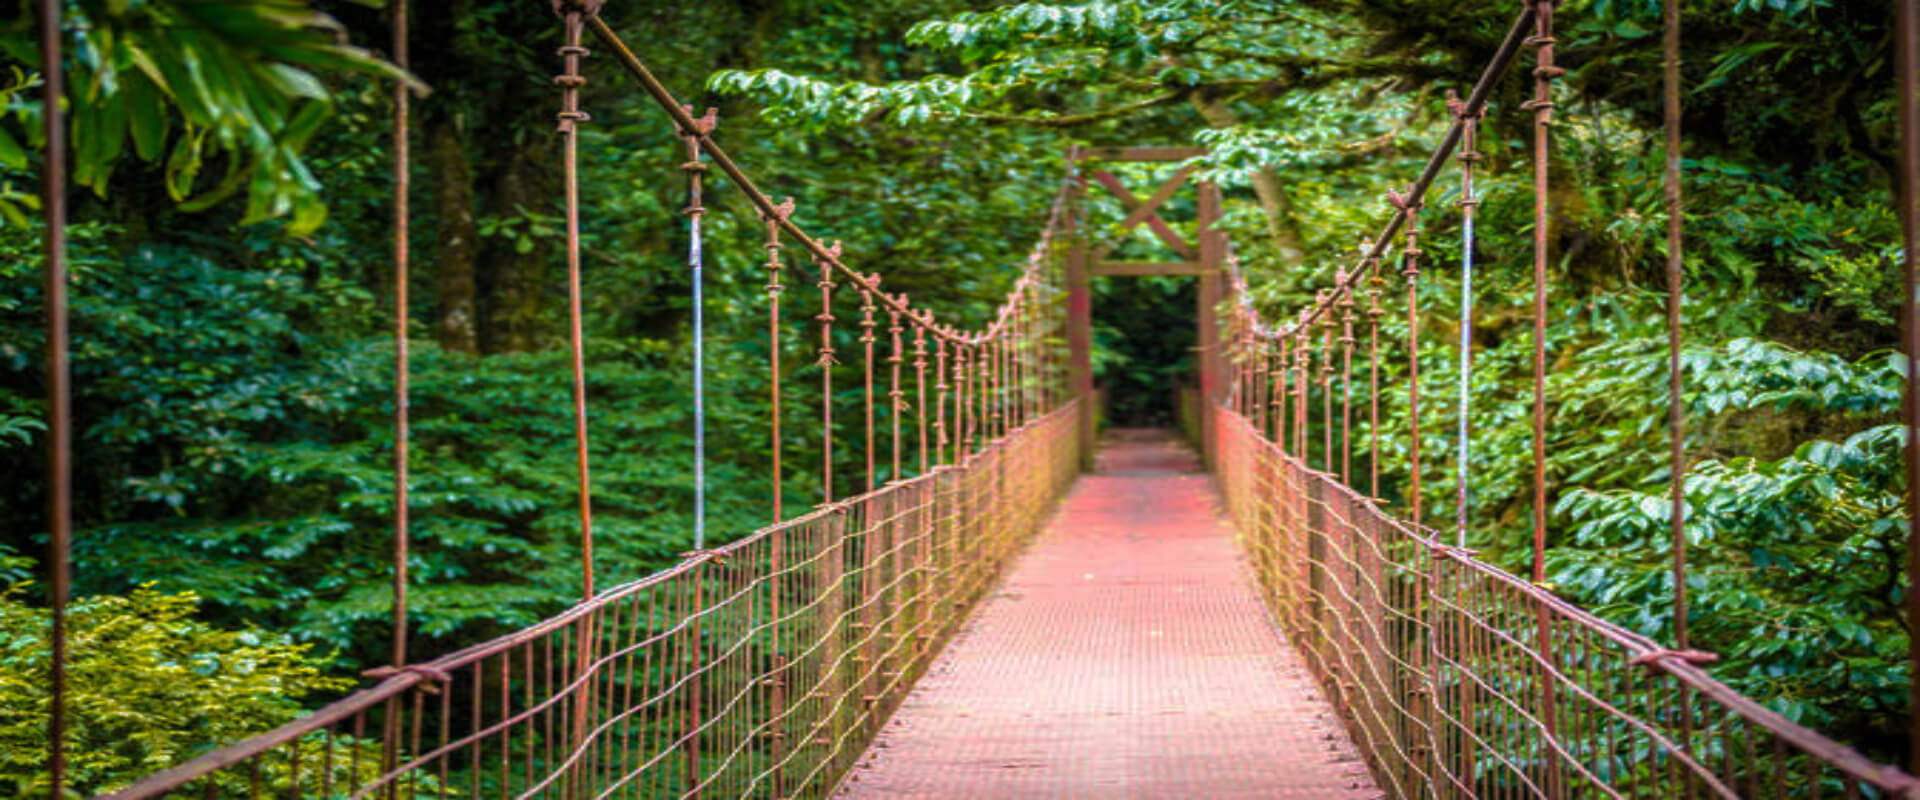 Hermano Indirecto boxeo Caminata por los puentes colgantes del Parque Místico | Costa Rica Jade  Tours